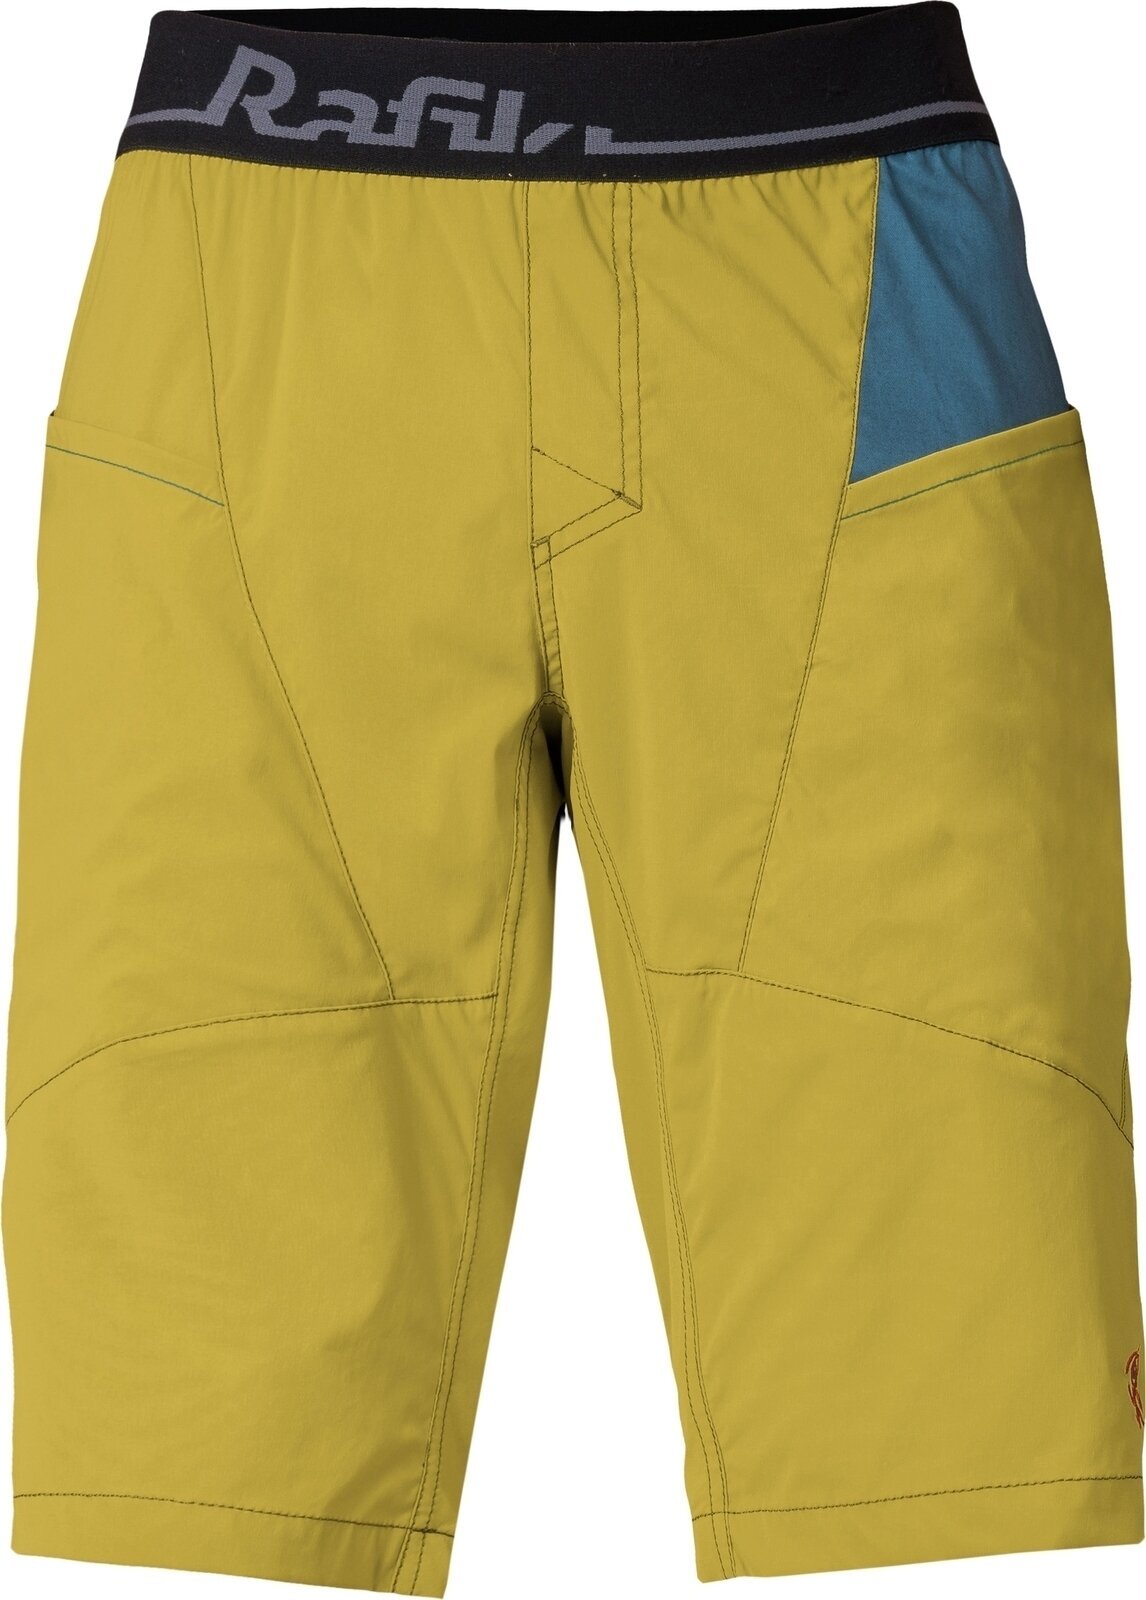 Spodenki outdoorowe Rafiki Megos Man Shorts Cress Green/Stargazer XL Spodenki outdoorowe